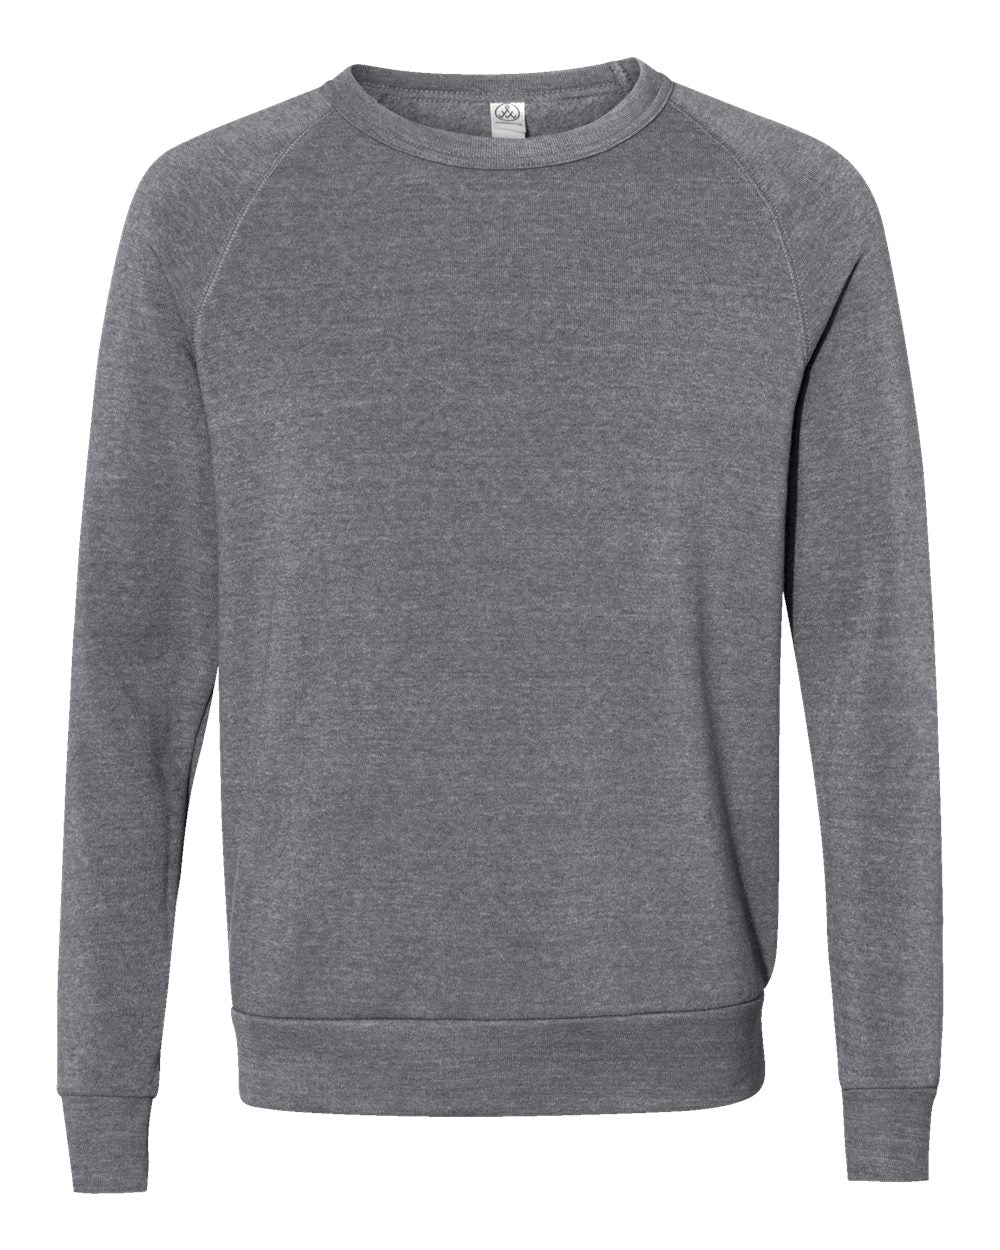 Alternative Champ Eco-Fleece Crewneck Sweatshirt 9575 #color_Eco Grey